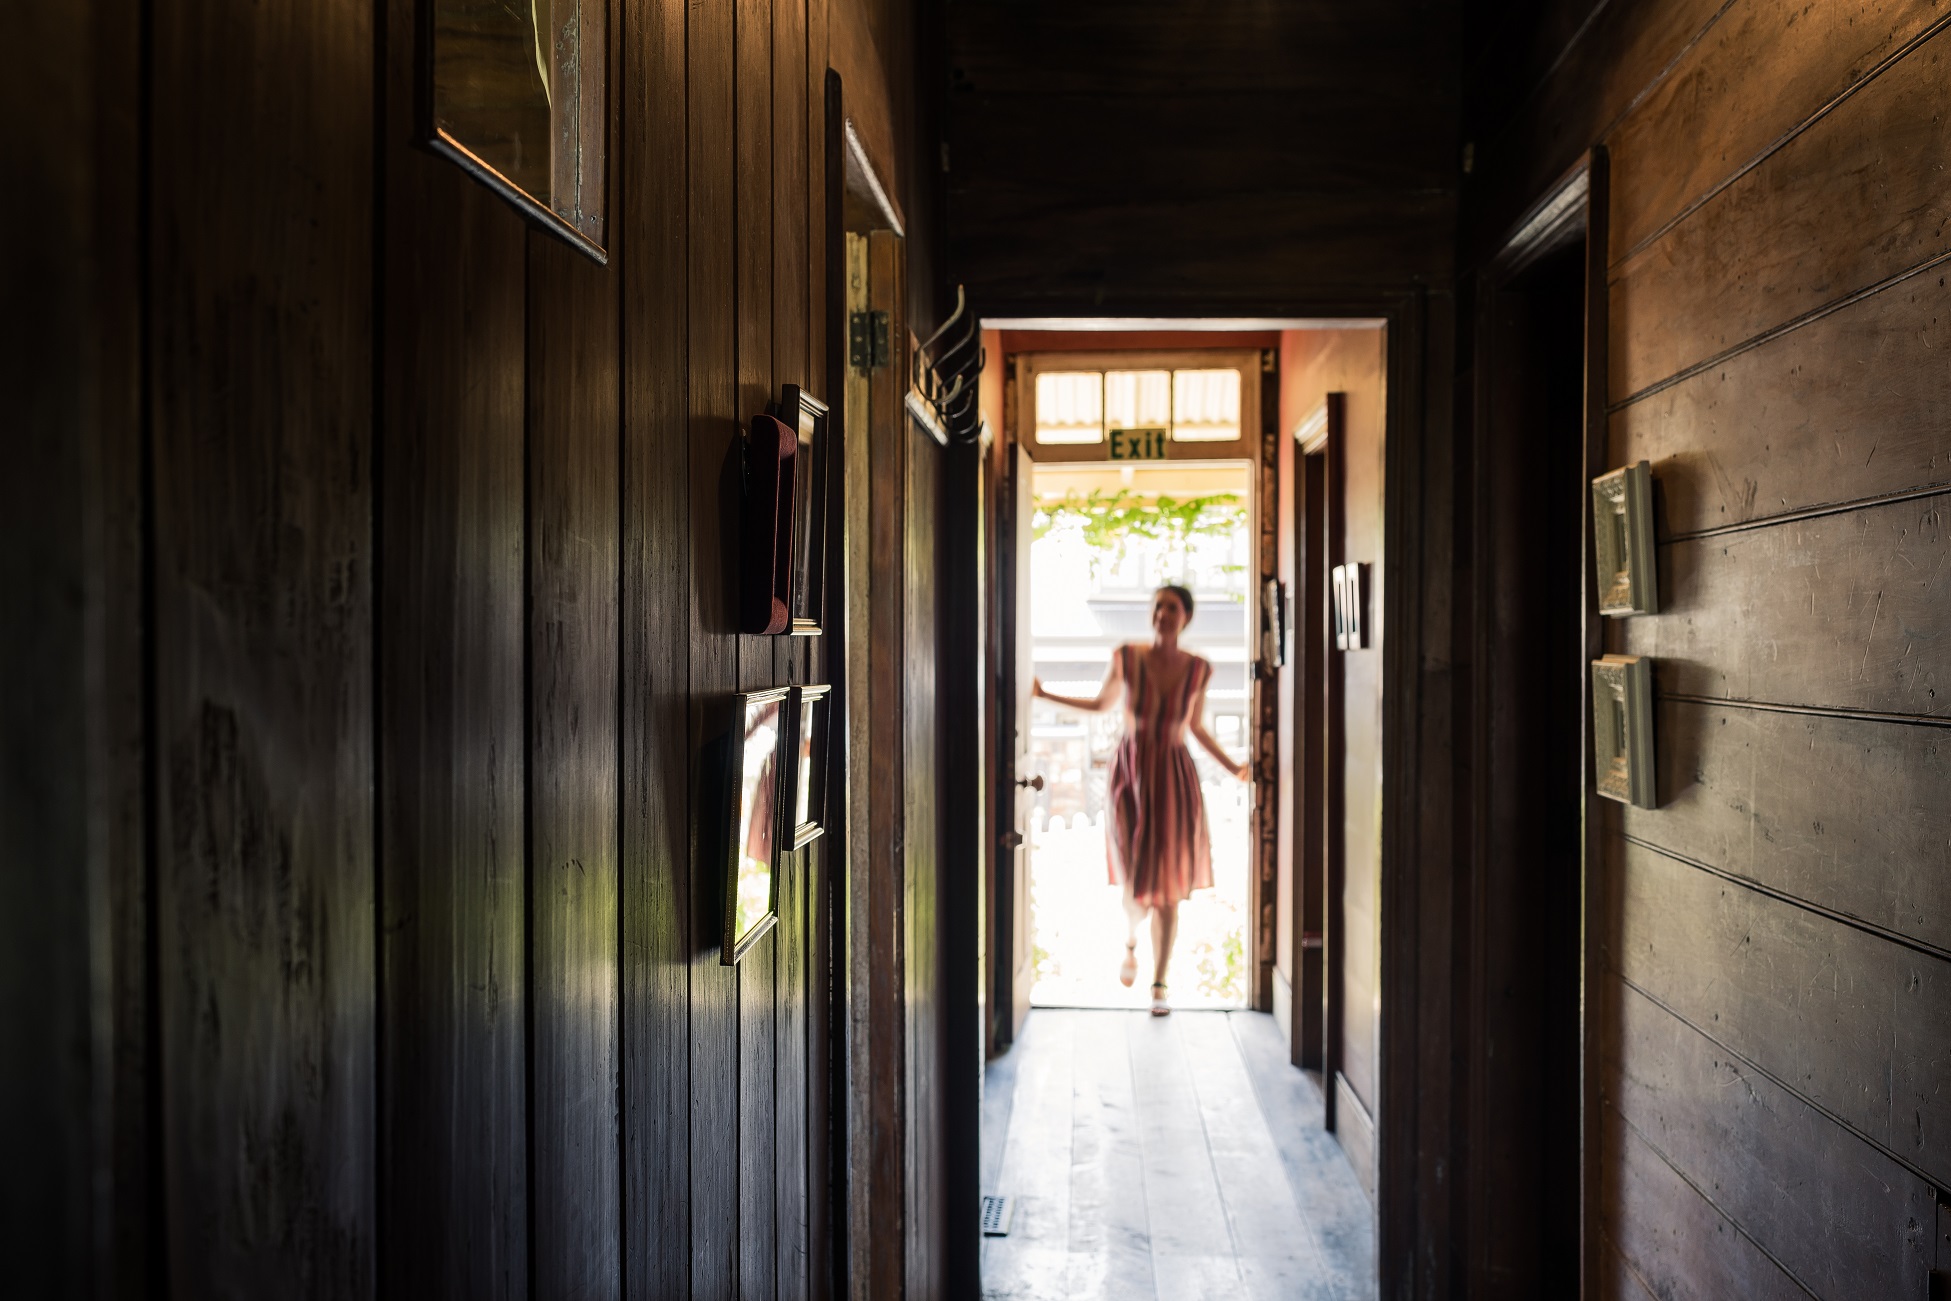 A long shot through the cottage's corridor as a woman enters through the front door.